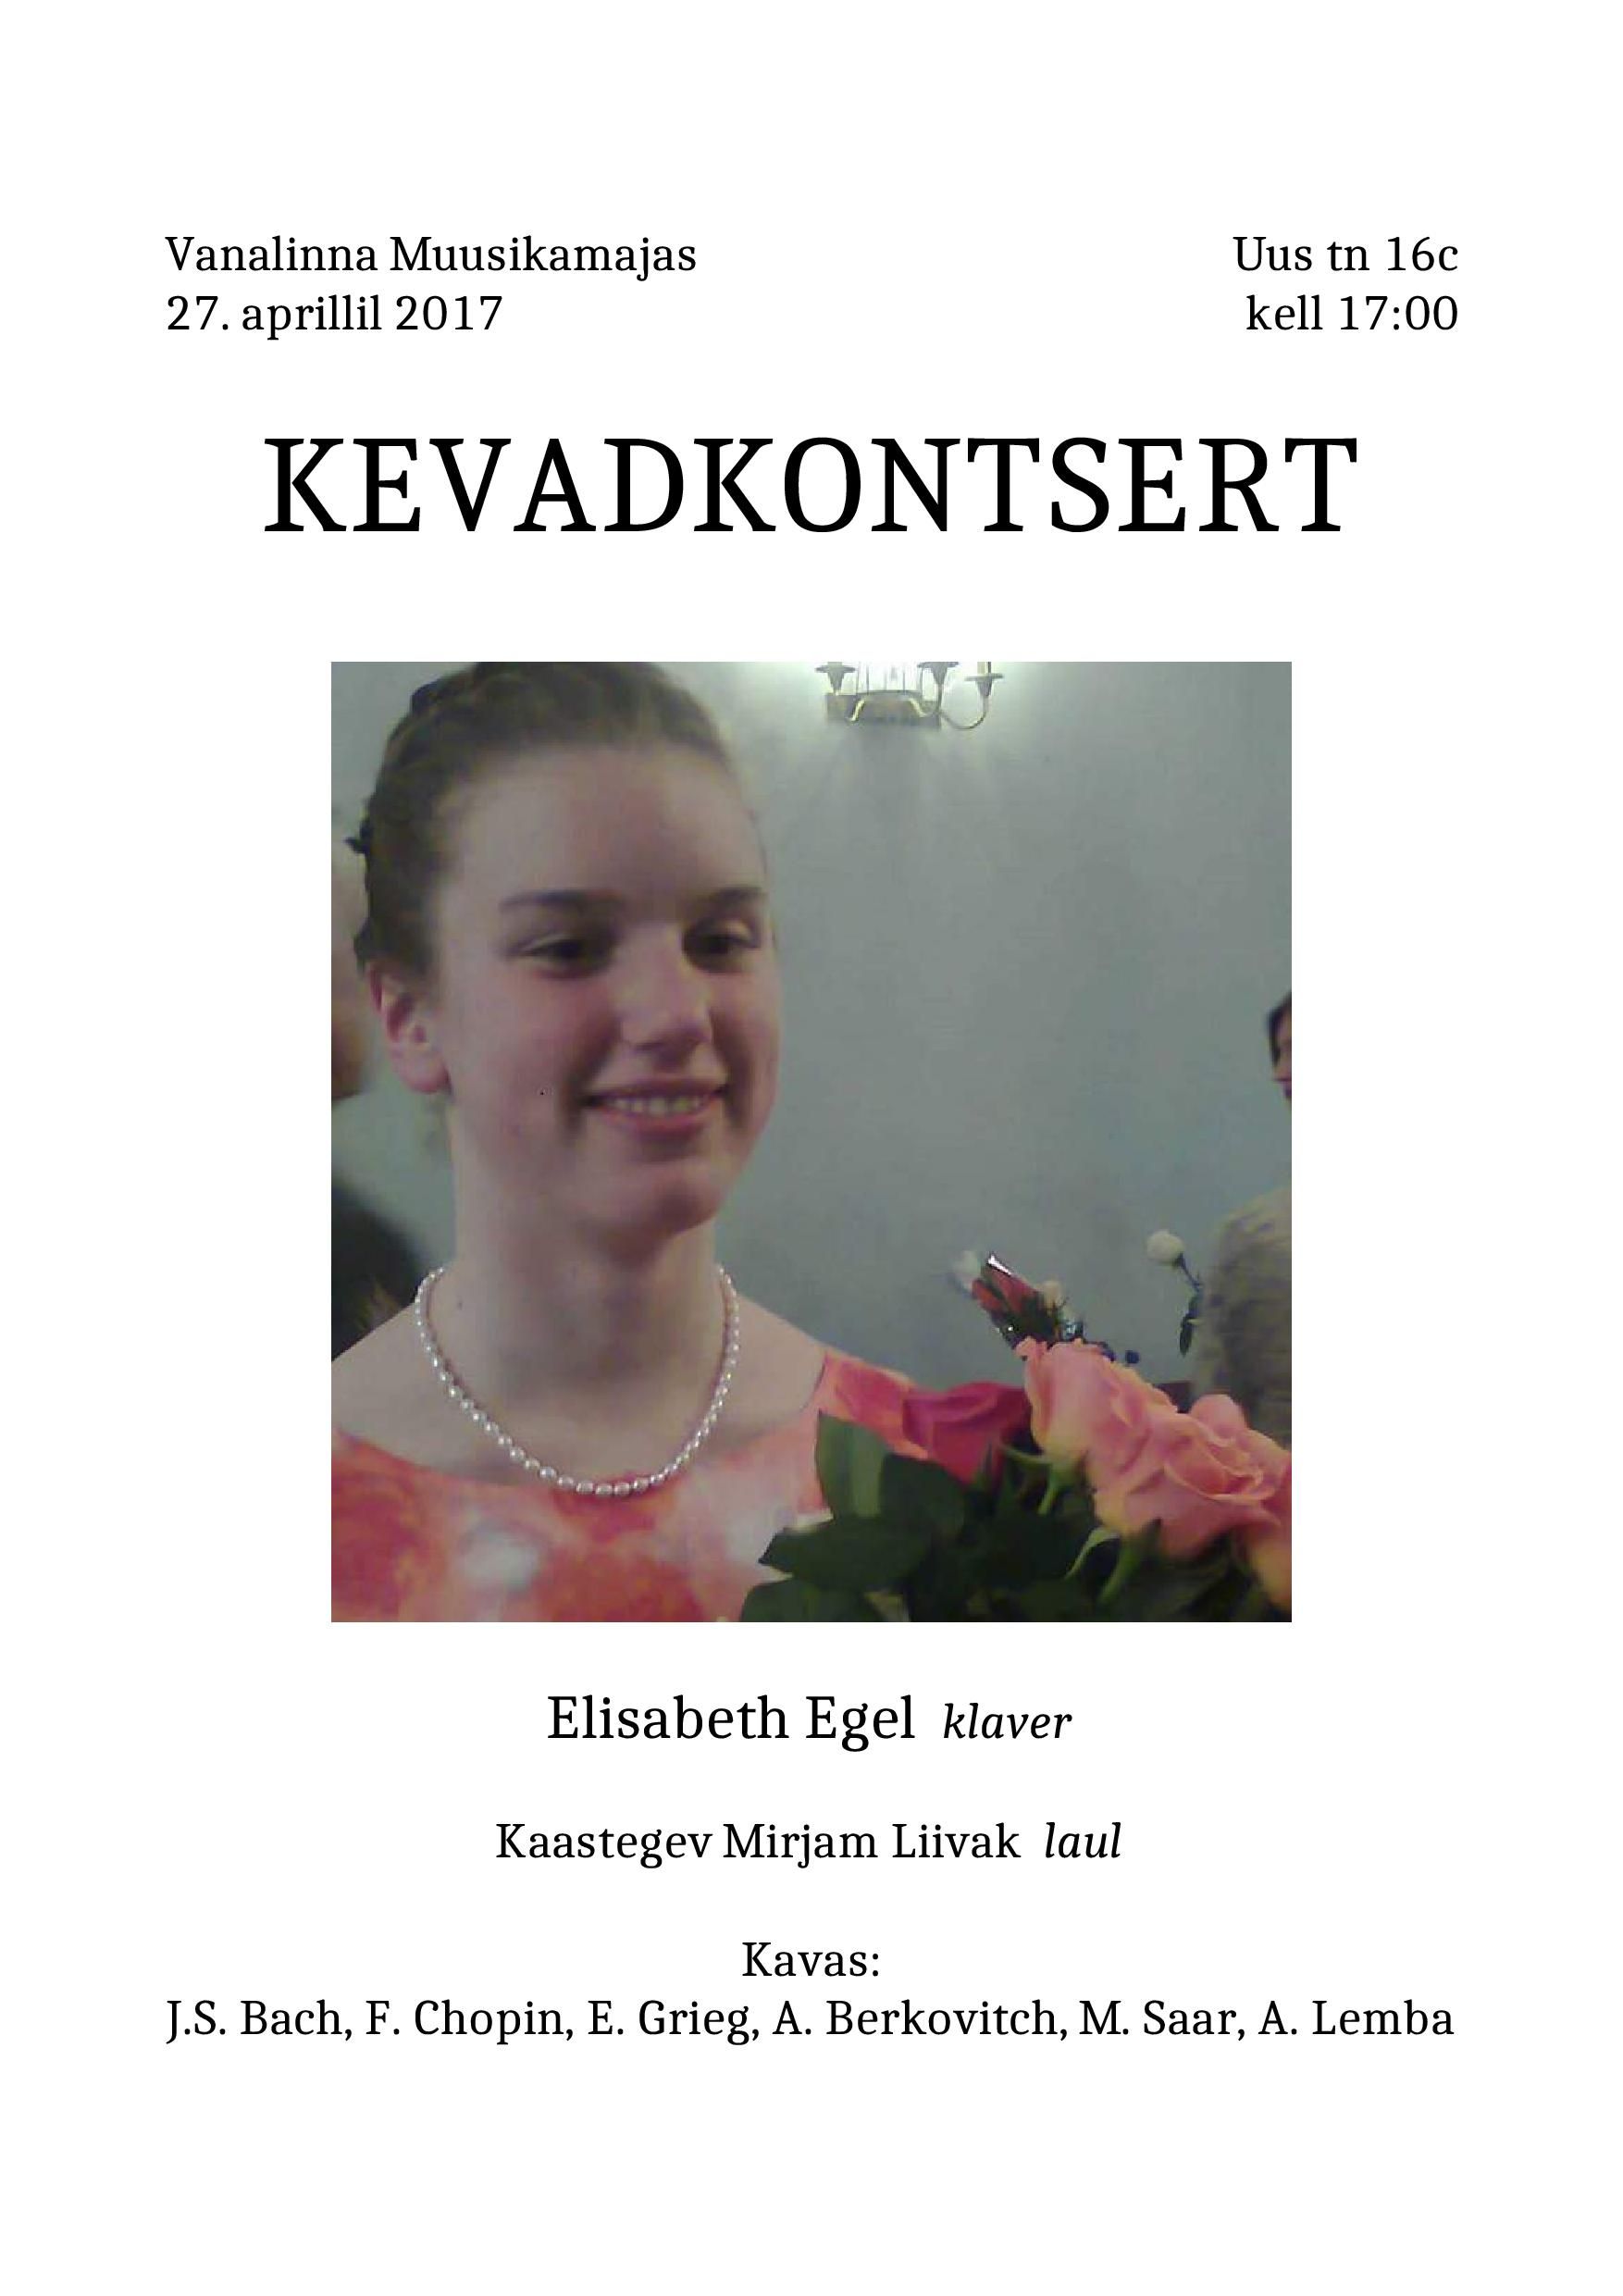 Elisabeth Egeli kevadkontsert 27.aprillil 2017 kell 17:00 Vanalinna Muusikamajas